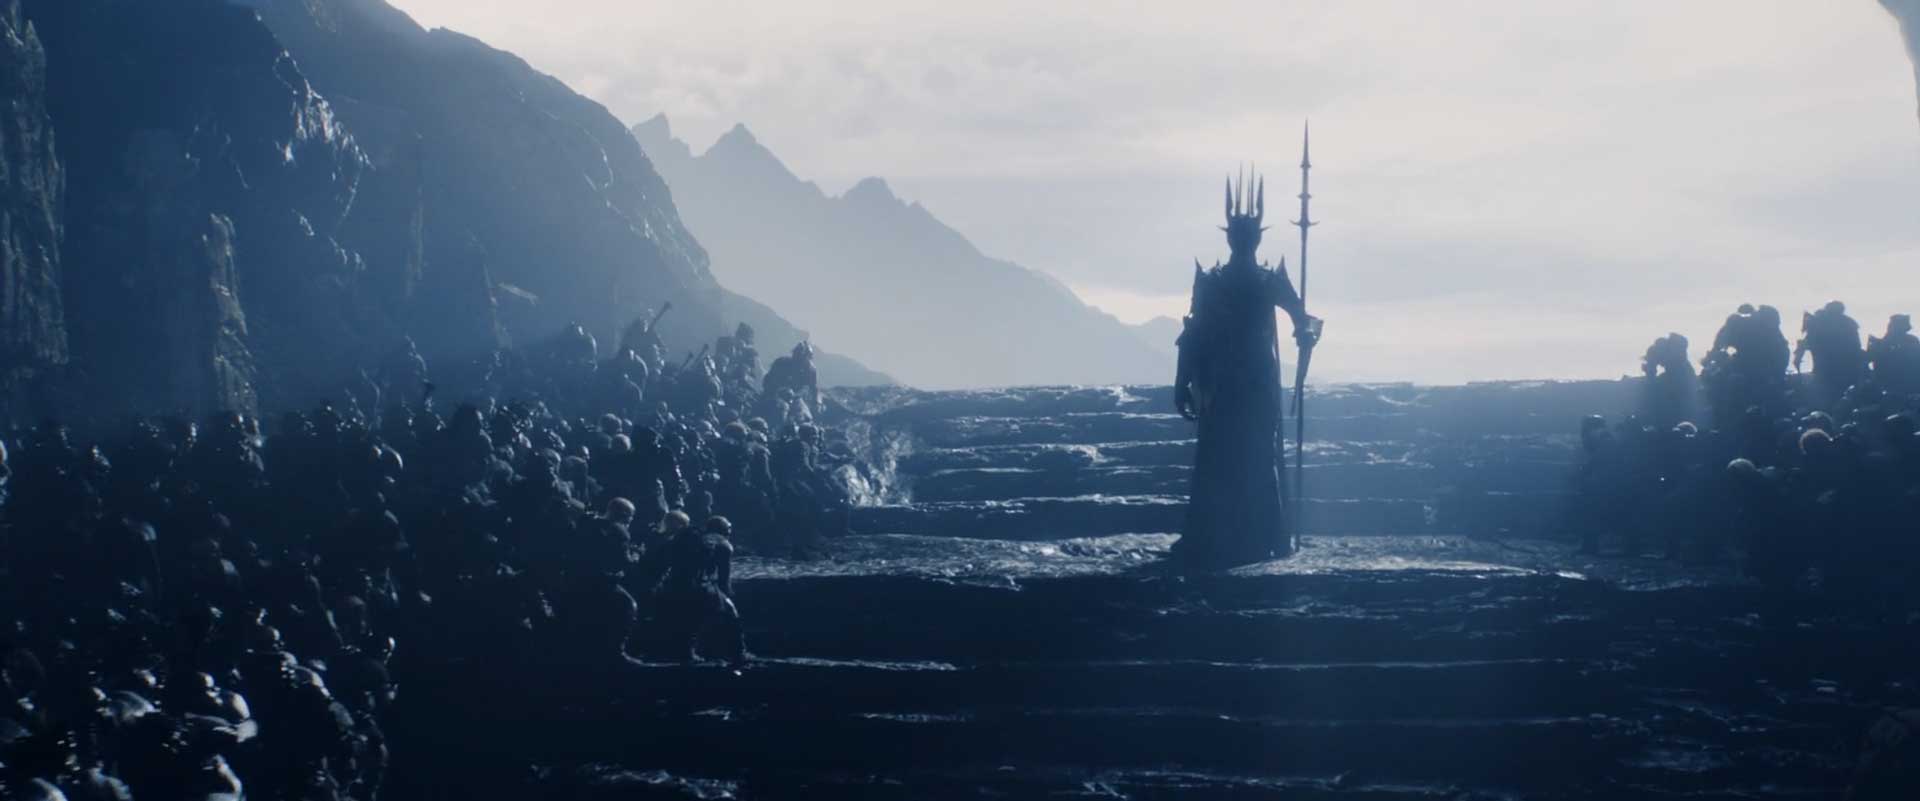 ارباب تاریکی در برابر خدمتگزارهای خود در سریال The Lord of the Rings: The Rings of Power